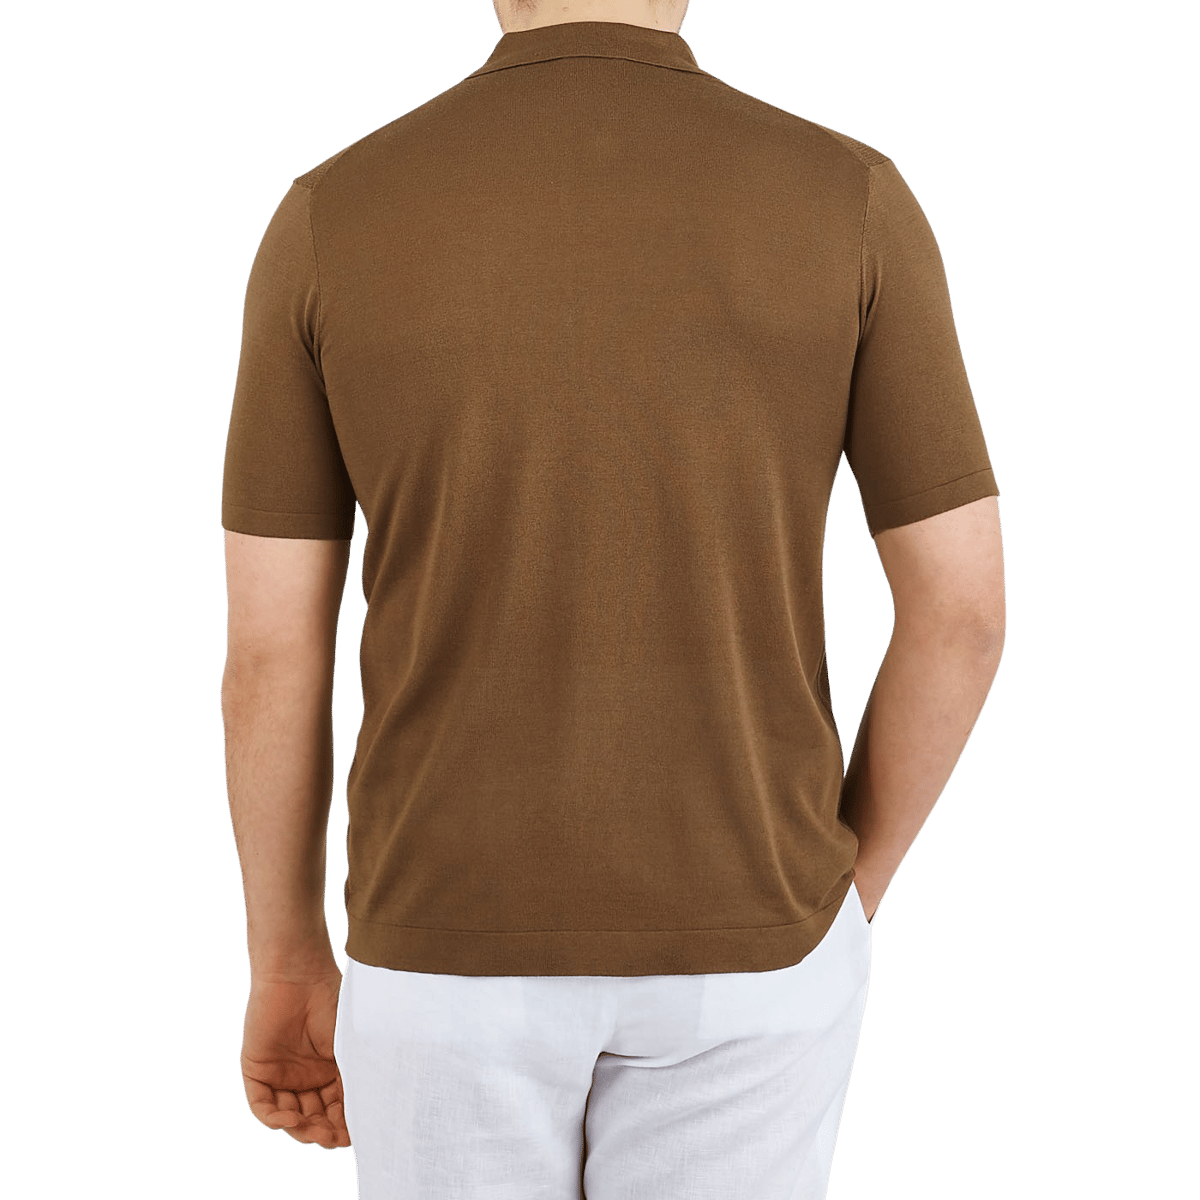 brown collar shirt